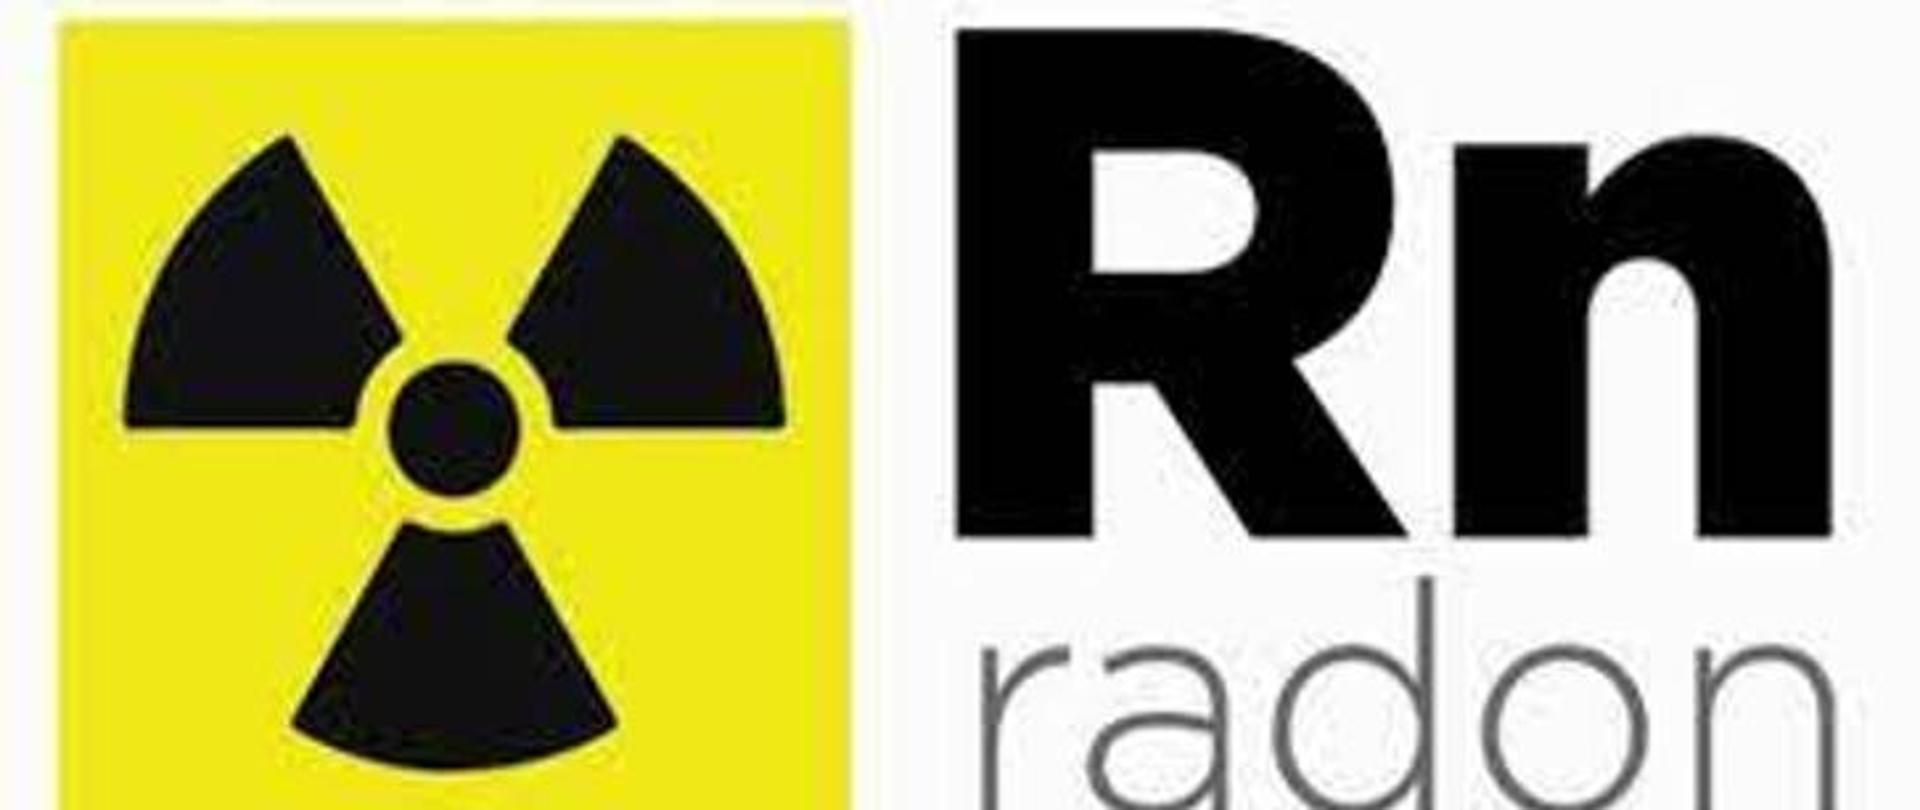 Radon- podstawowe informacje
